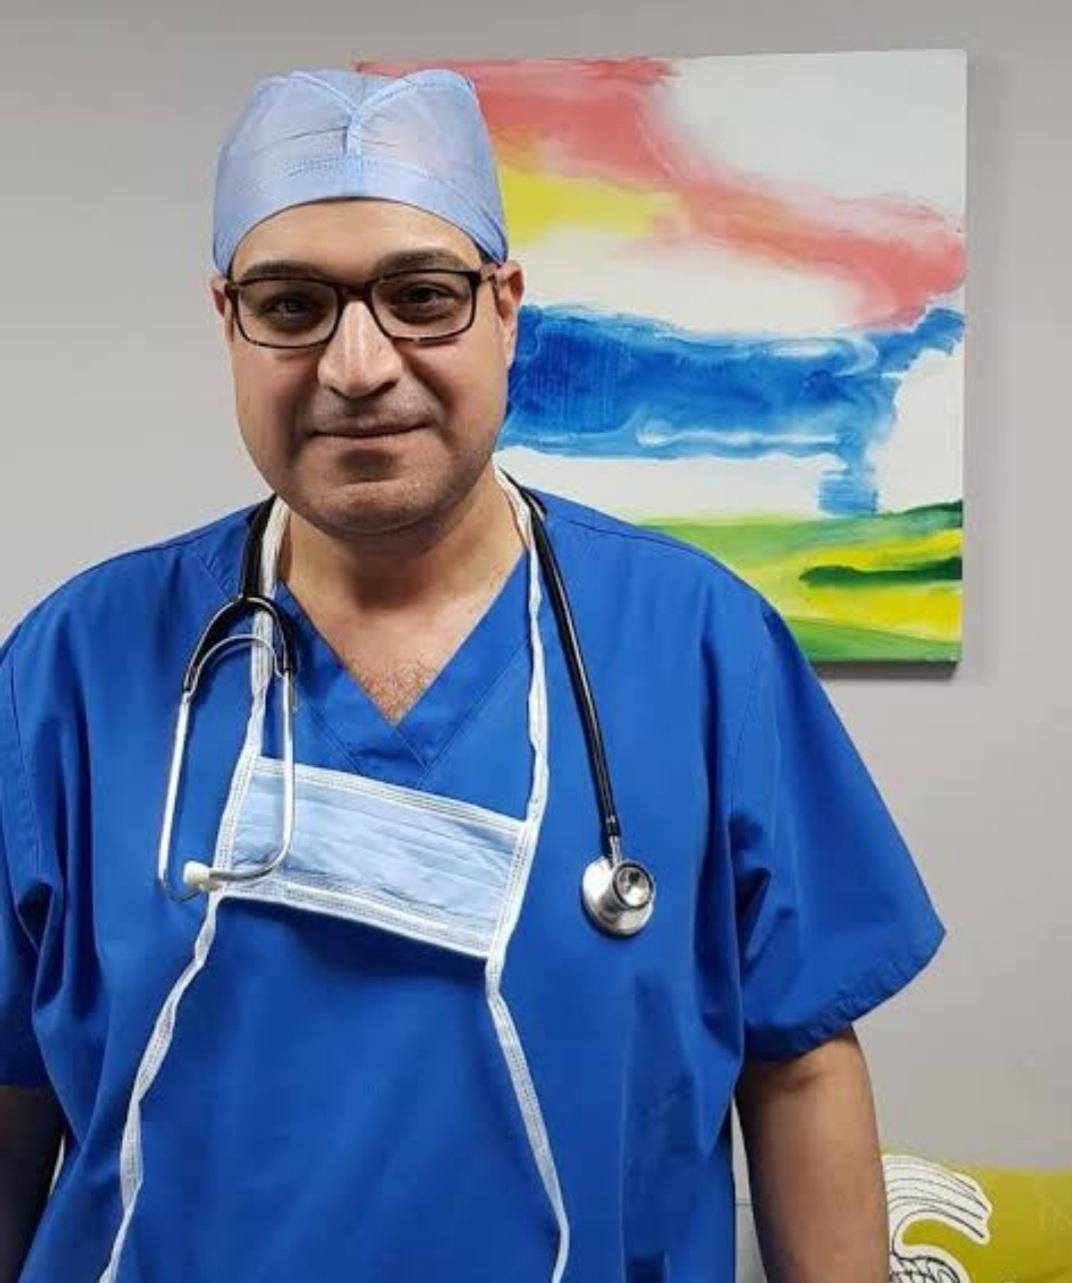 Impulse DentoFacial Clinic (Dr.Hamed A. Shaheen) أفضل دكتور جراحة وجه وفكين في مصر